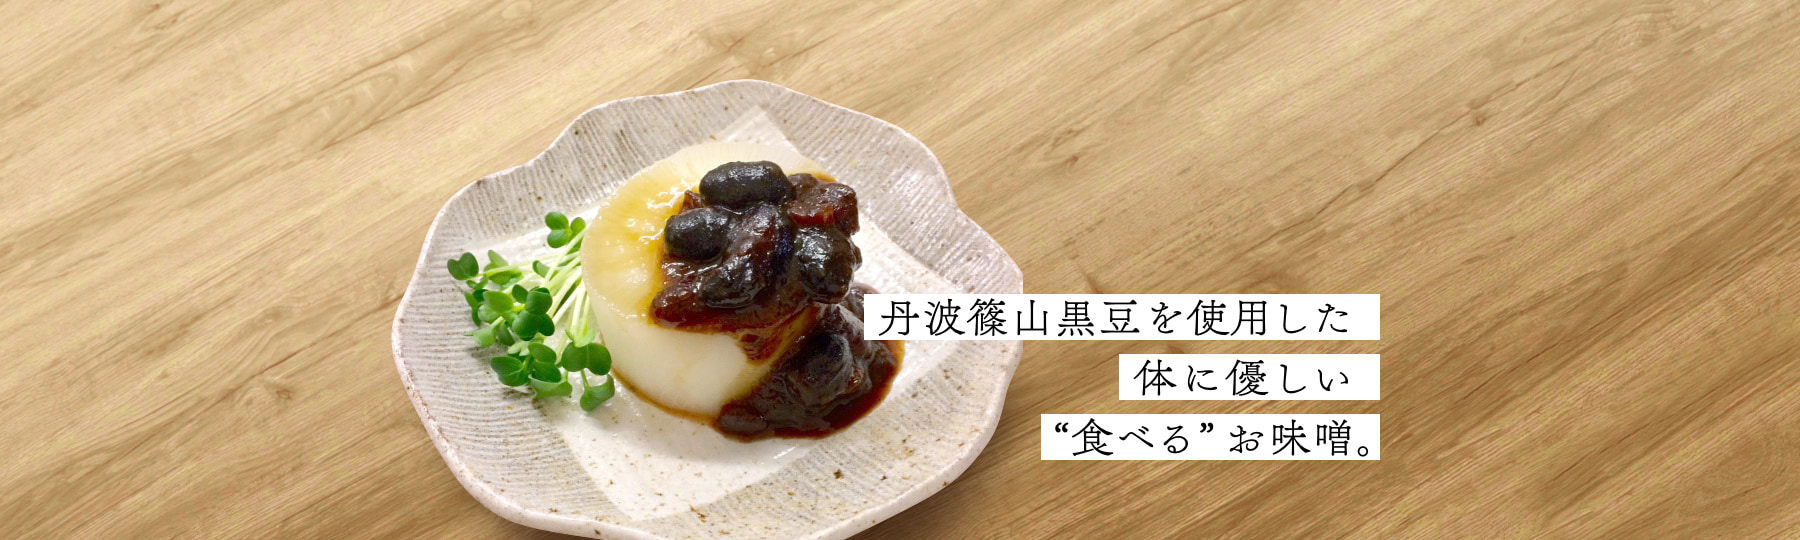 丹波篠山黒豆を使用した体に優しい“食べる”お味噌。